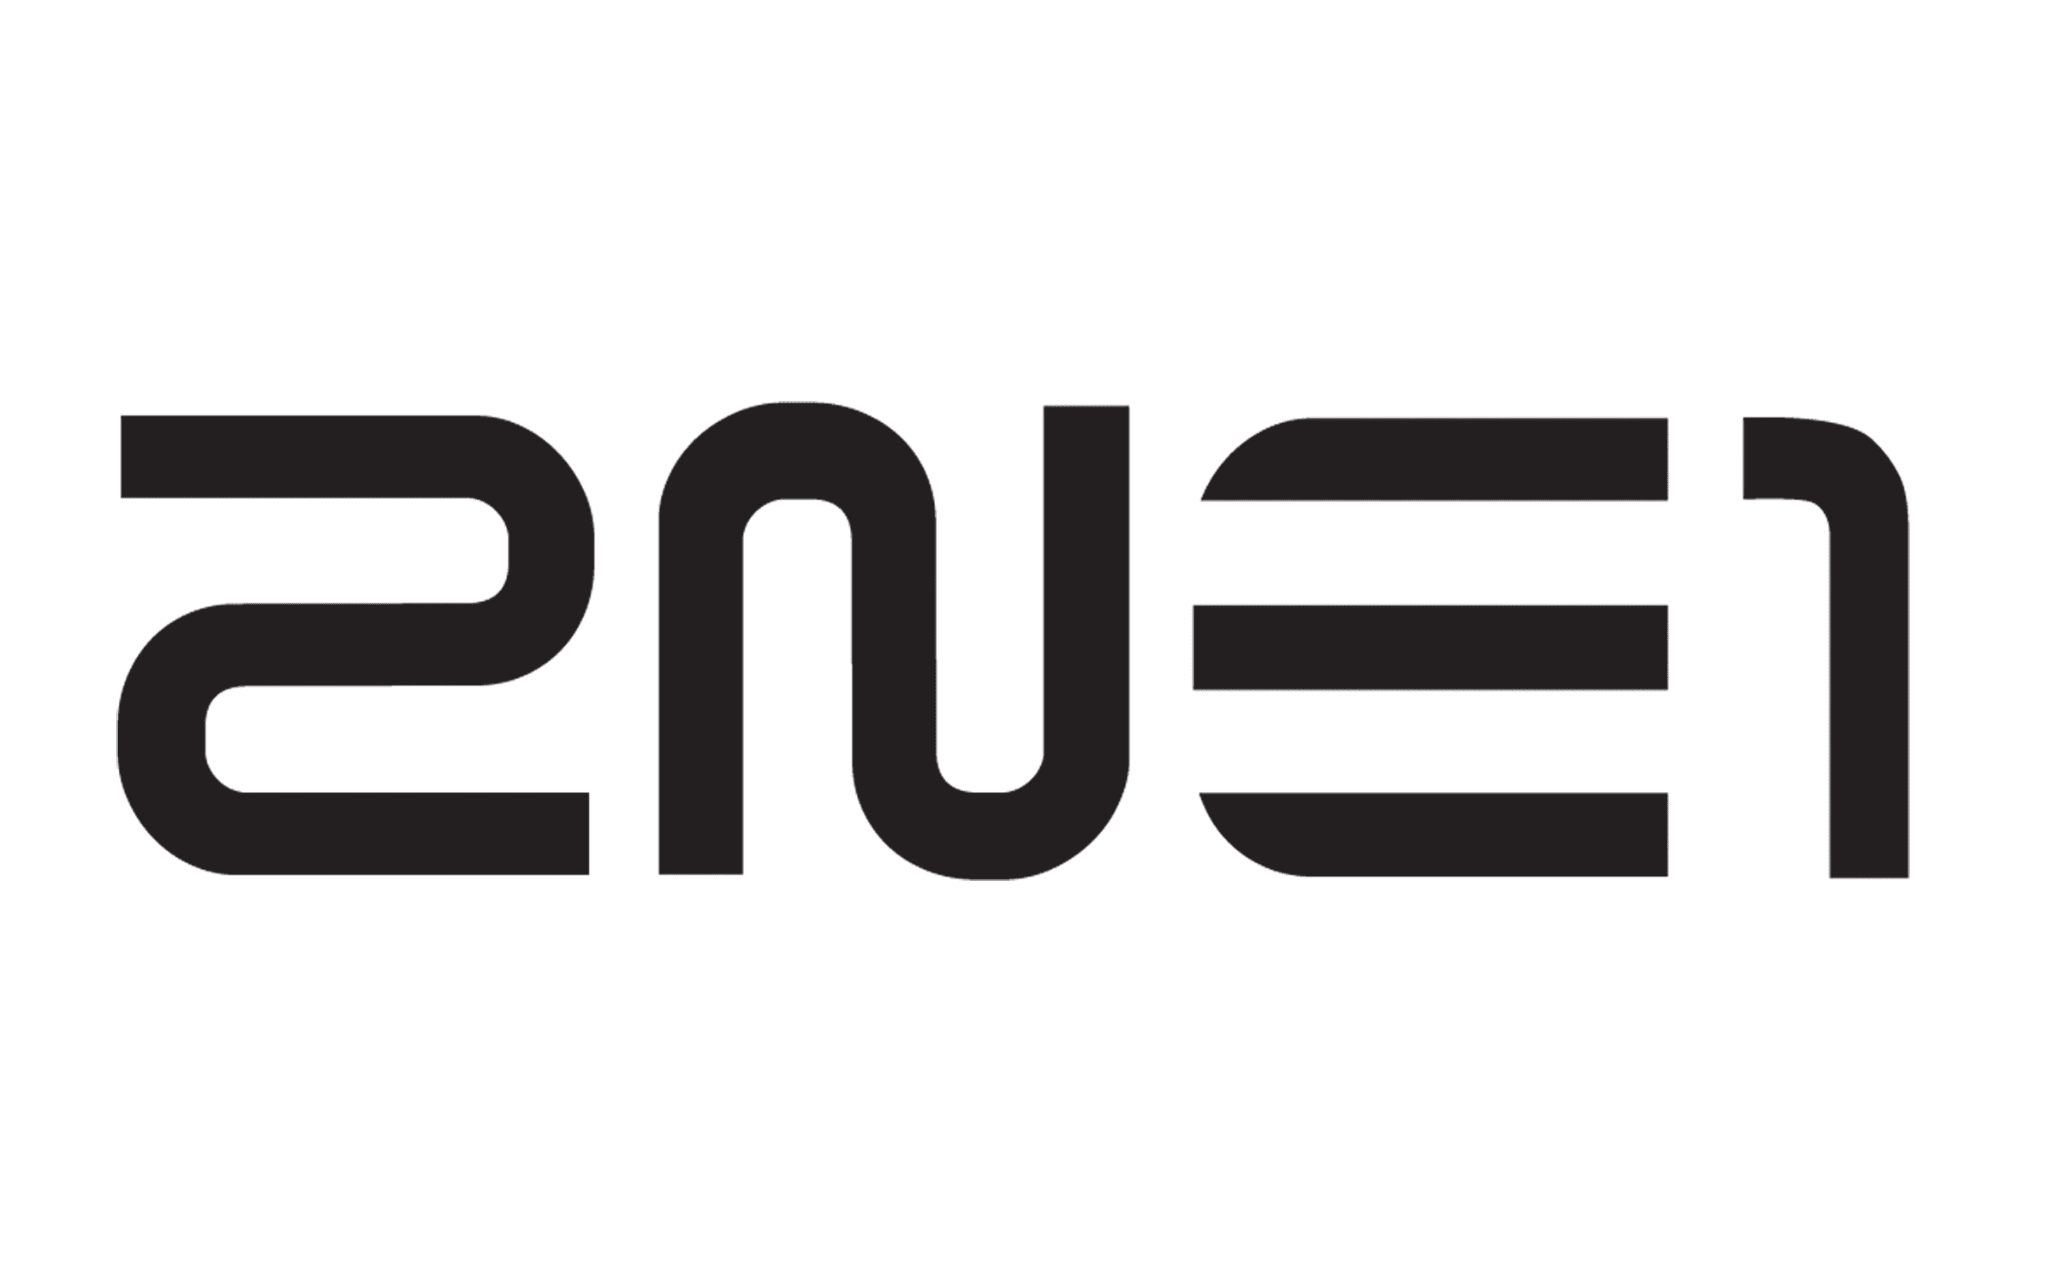 2NE1 logo